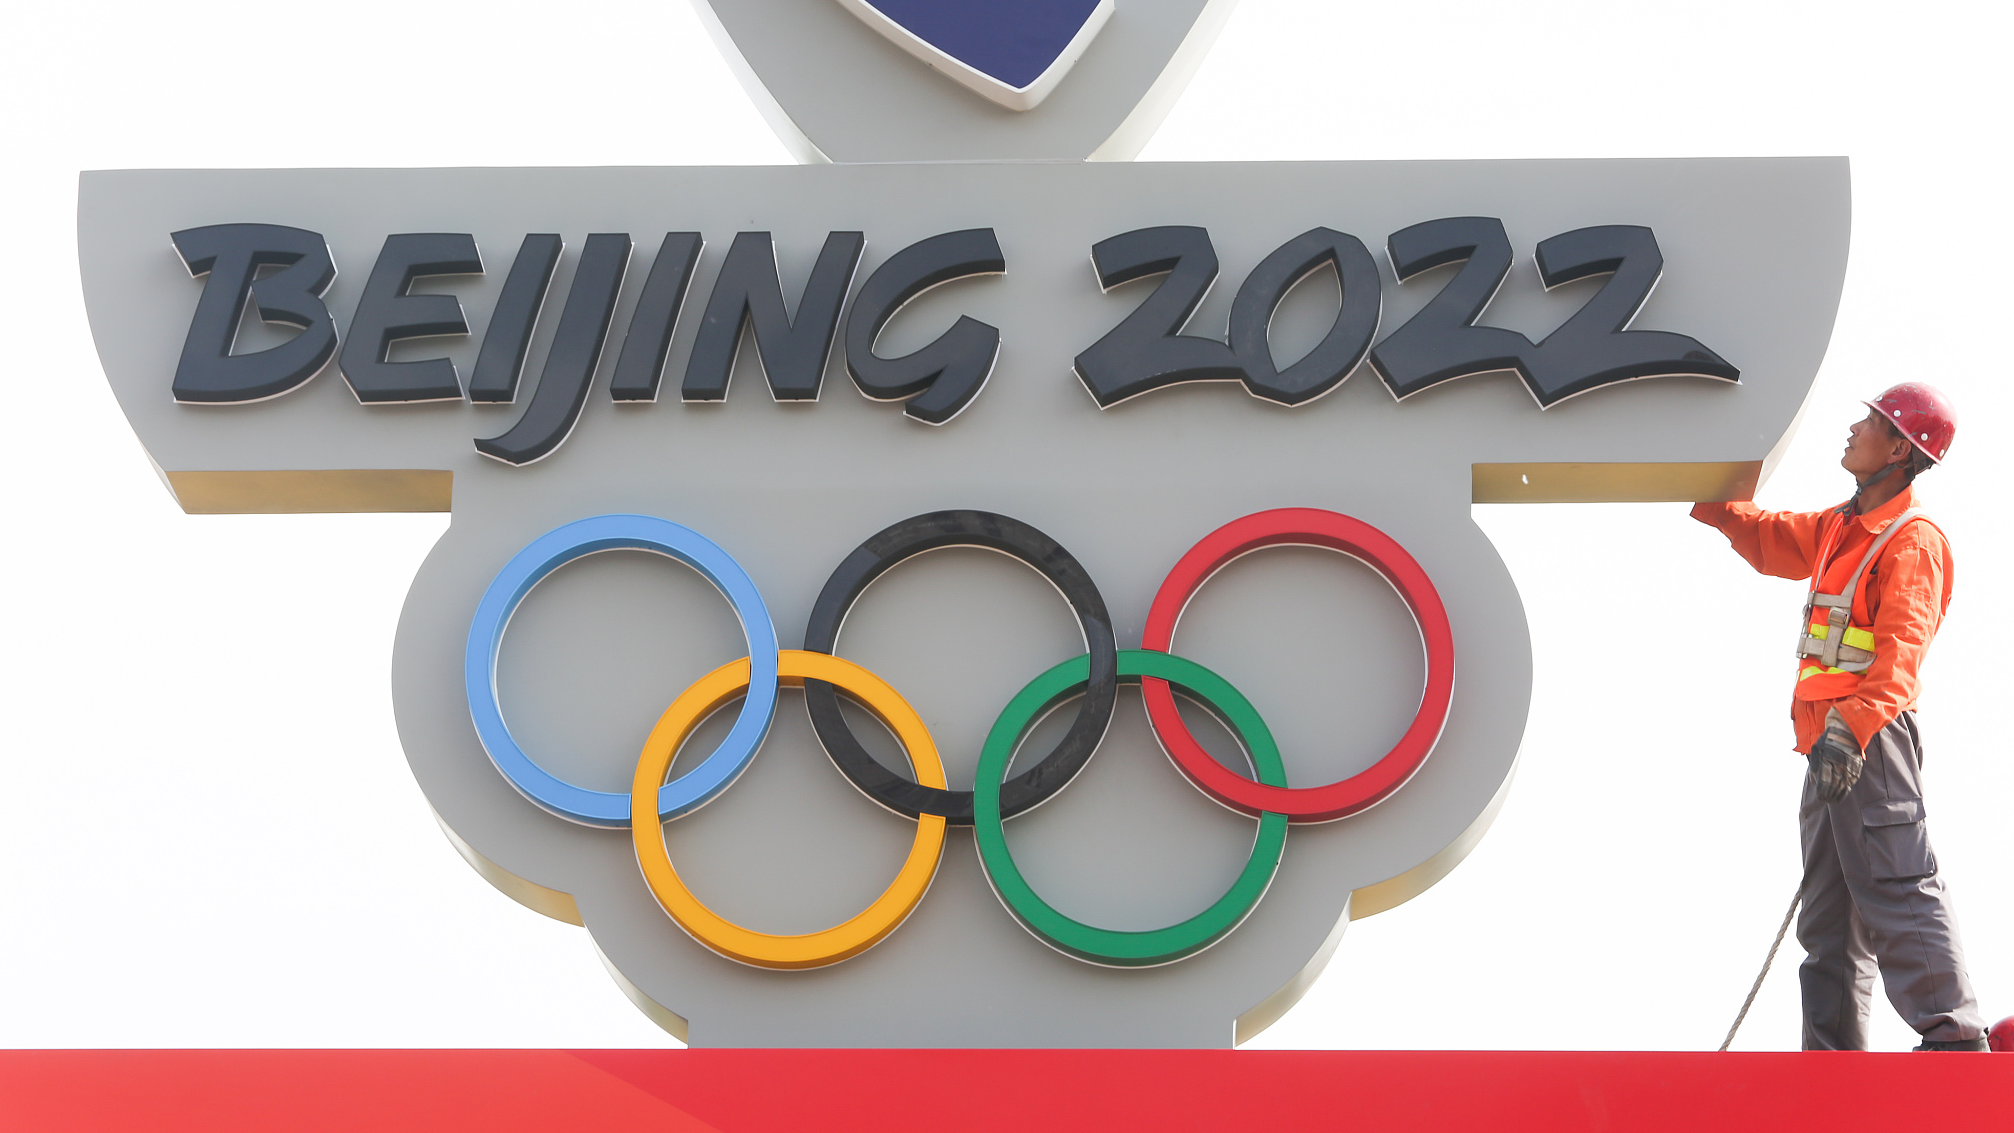 2022 Beijing Olympic Winter Games